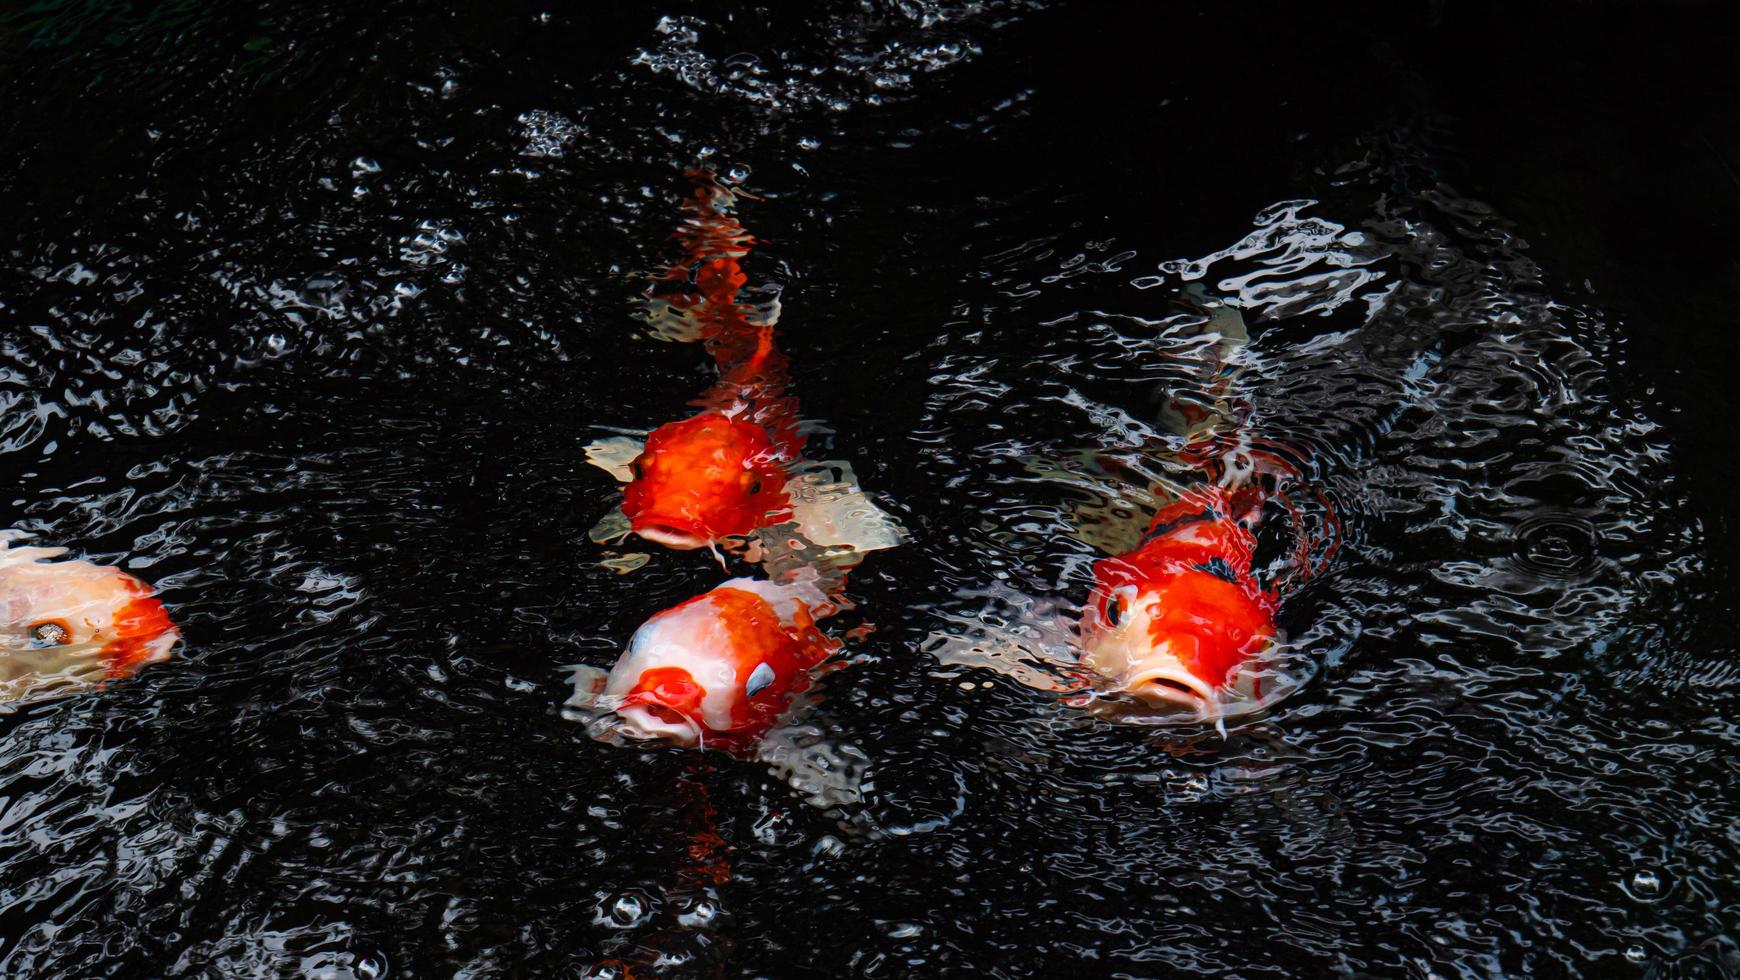 fancy koi vissen of fancy karpers zwemmen in een zwarte vijver visvijver. populaire huisdieren voor ontspanning en feng shui-betekenis. de vis sprong op en opende zijn mond boven het water. wachten op eten foto